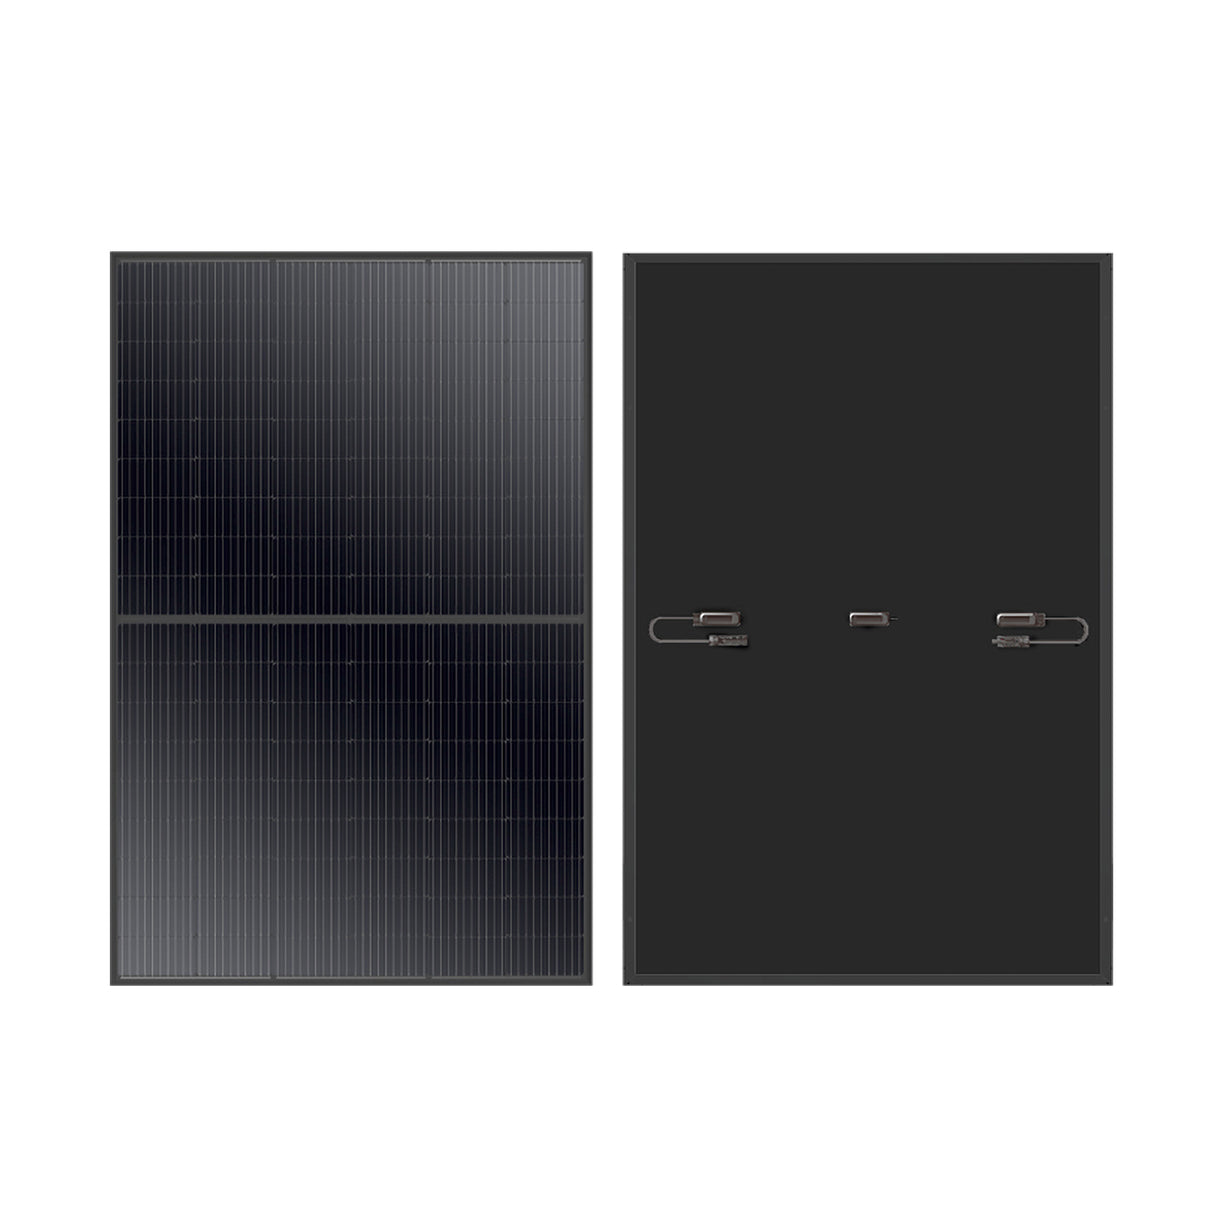 MEGA 410 Watt Monocrystalline Solar Panel | High Efficiency | Black Mono-facial Module | Grid-Tie | Off-Grid | Tier 1 - RICH SOLAR